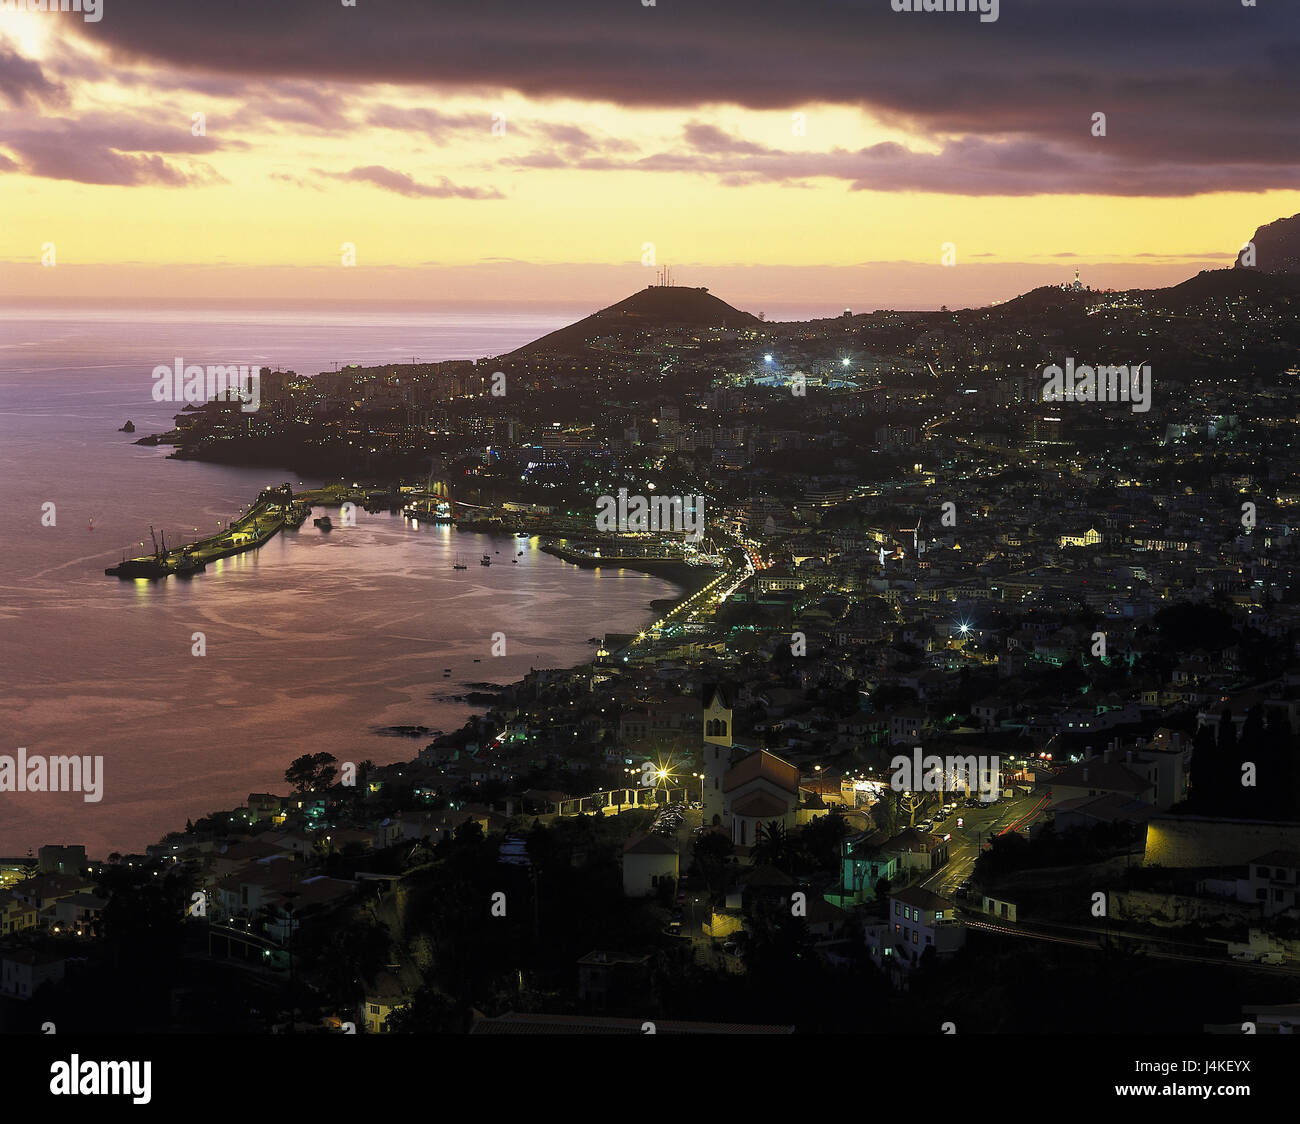 Portugal Insel Madeira, Funchal, Blick auf die Stadt, Hafen, Abend Stimmung Europa, Atlantic, Atlantik, Stadt, Kirche, Häuser, Wohnhäuser, Hafenbecken, Schiffe, Urlaubsziel, Destination, abends Himmel, Nachleuchten, Romantik Stockfoto